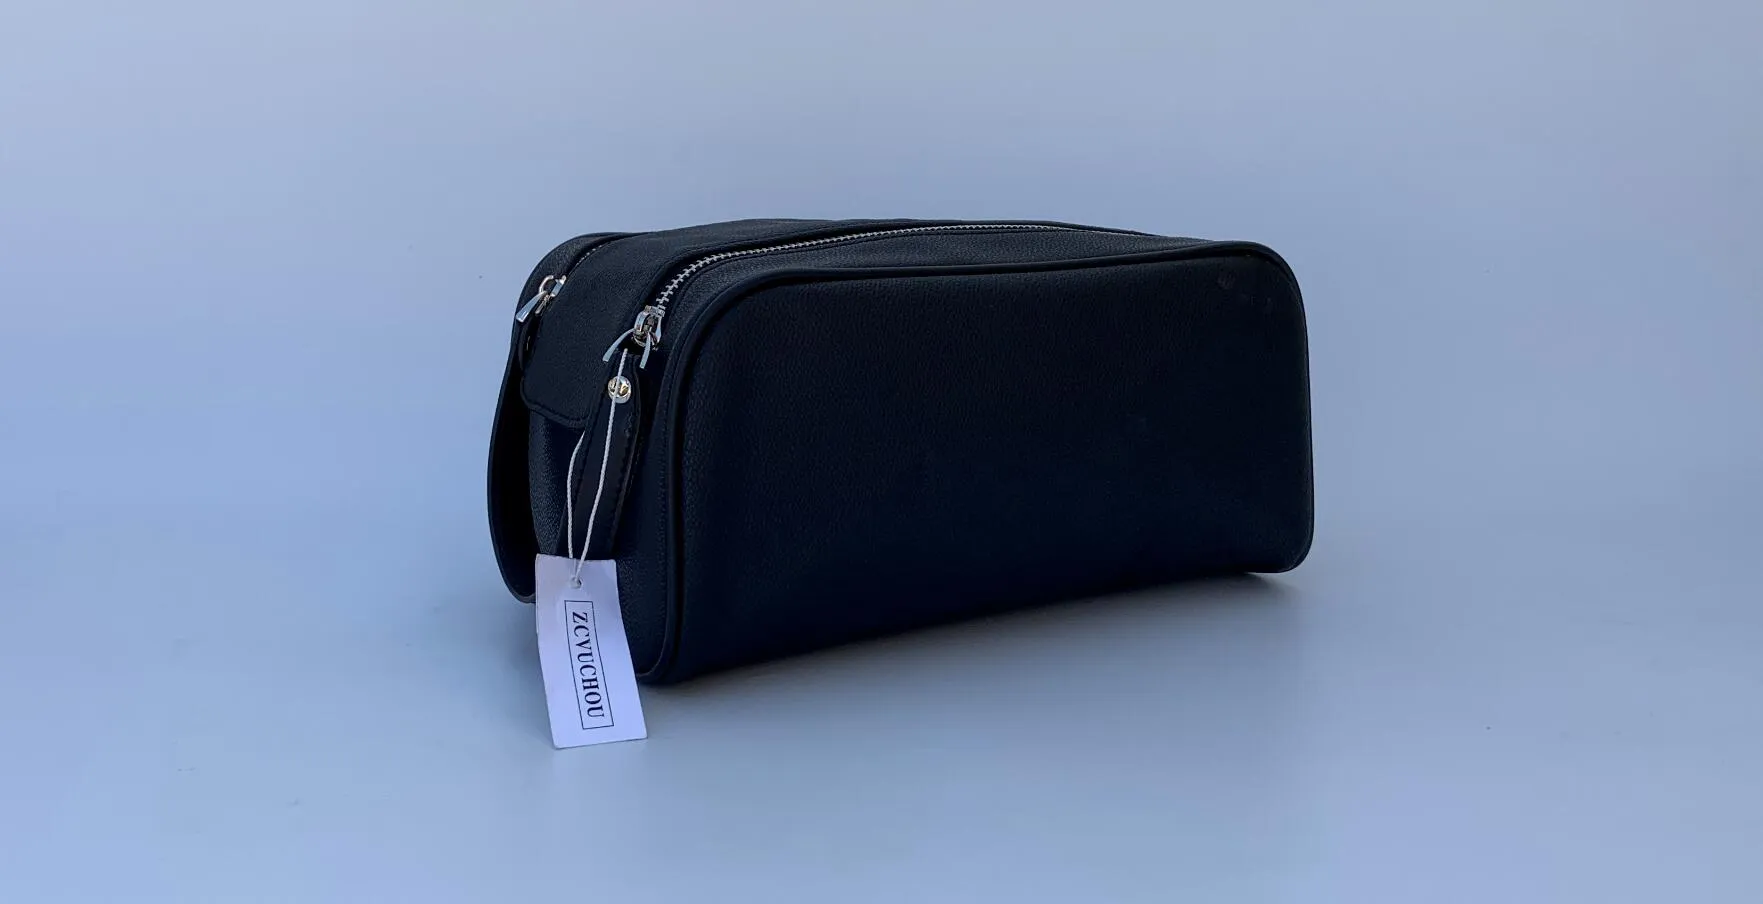 2019 Qualité haut de gamme hommes 26 cm de toilette voyage sac de la mode design femmes lavoir sac grande capacité sacs cosmétiques sacs maquillage sac de toilette sac